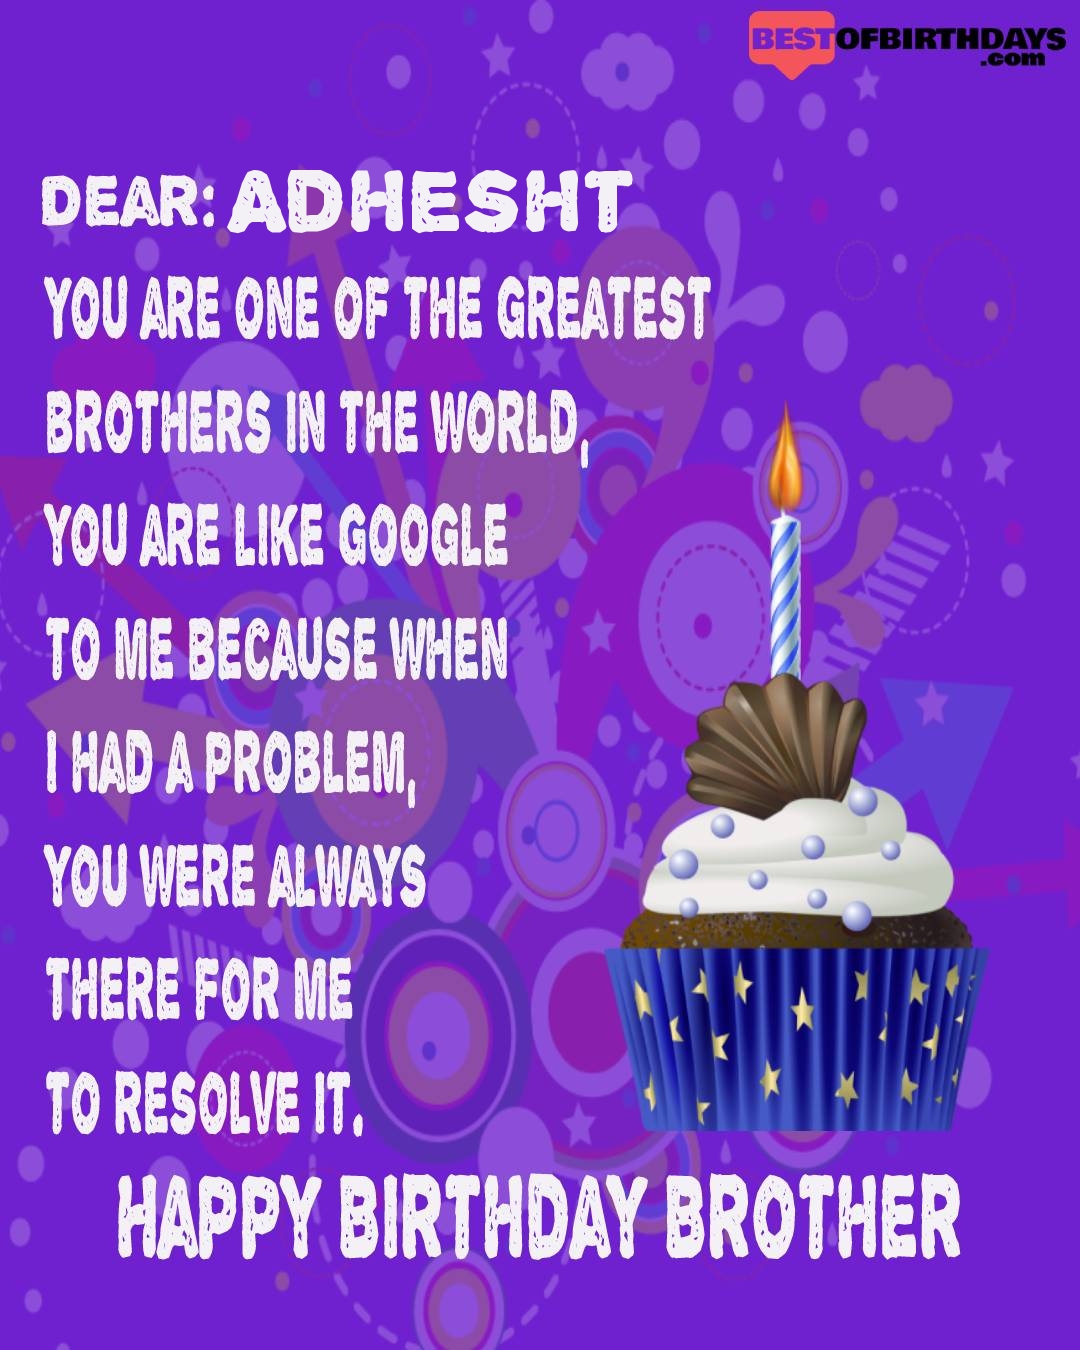 Happy birthday adhesht bhai brother bro